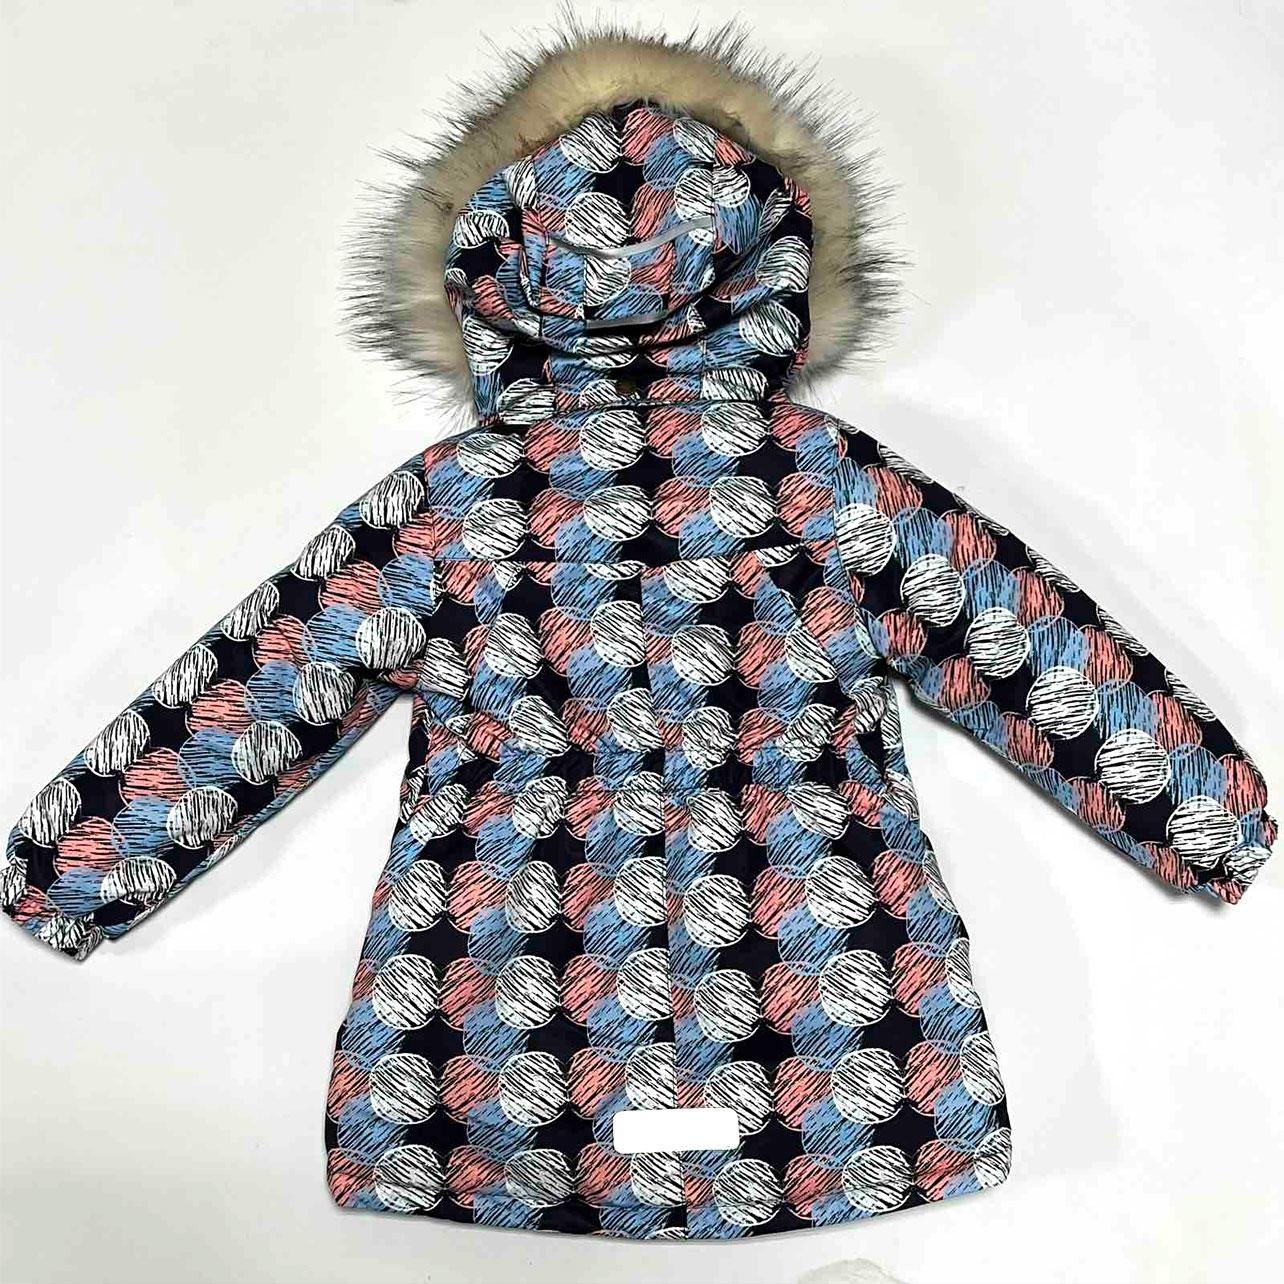 Дитяча зимова термо куртка для дівчинки (G-40), JOIKS